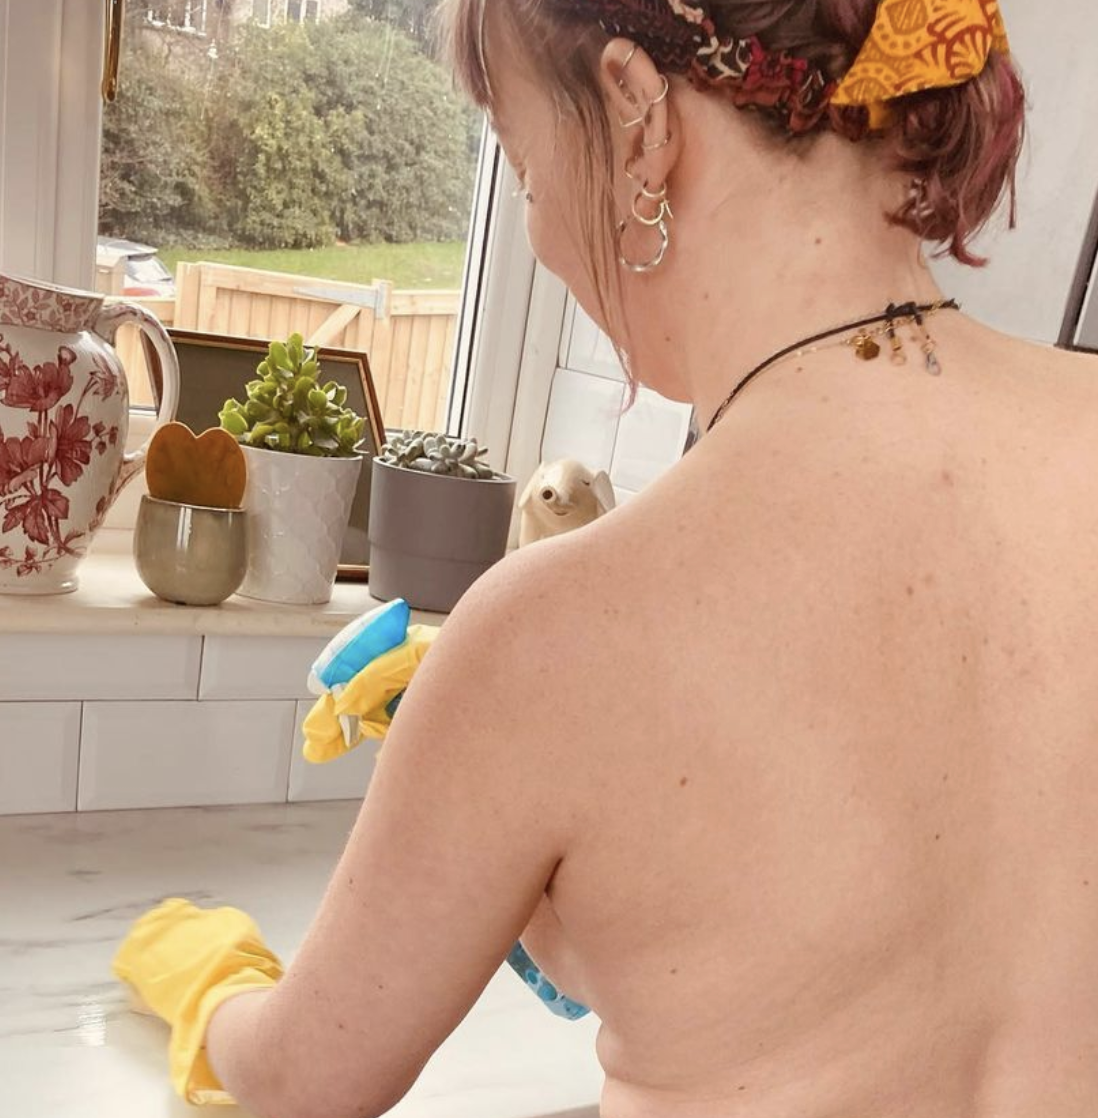 Mujer trabaja haciendo el aseo en casas desnuda y obvio que no le faltan  clientes – Publimetro Chile